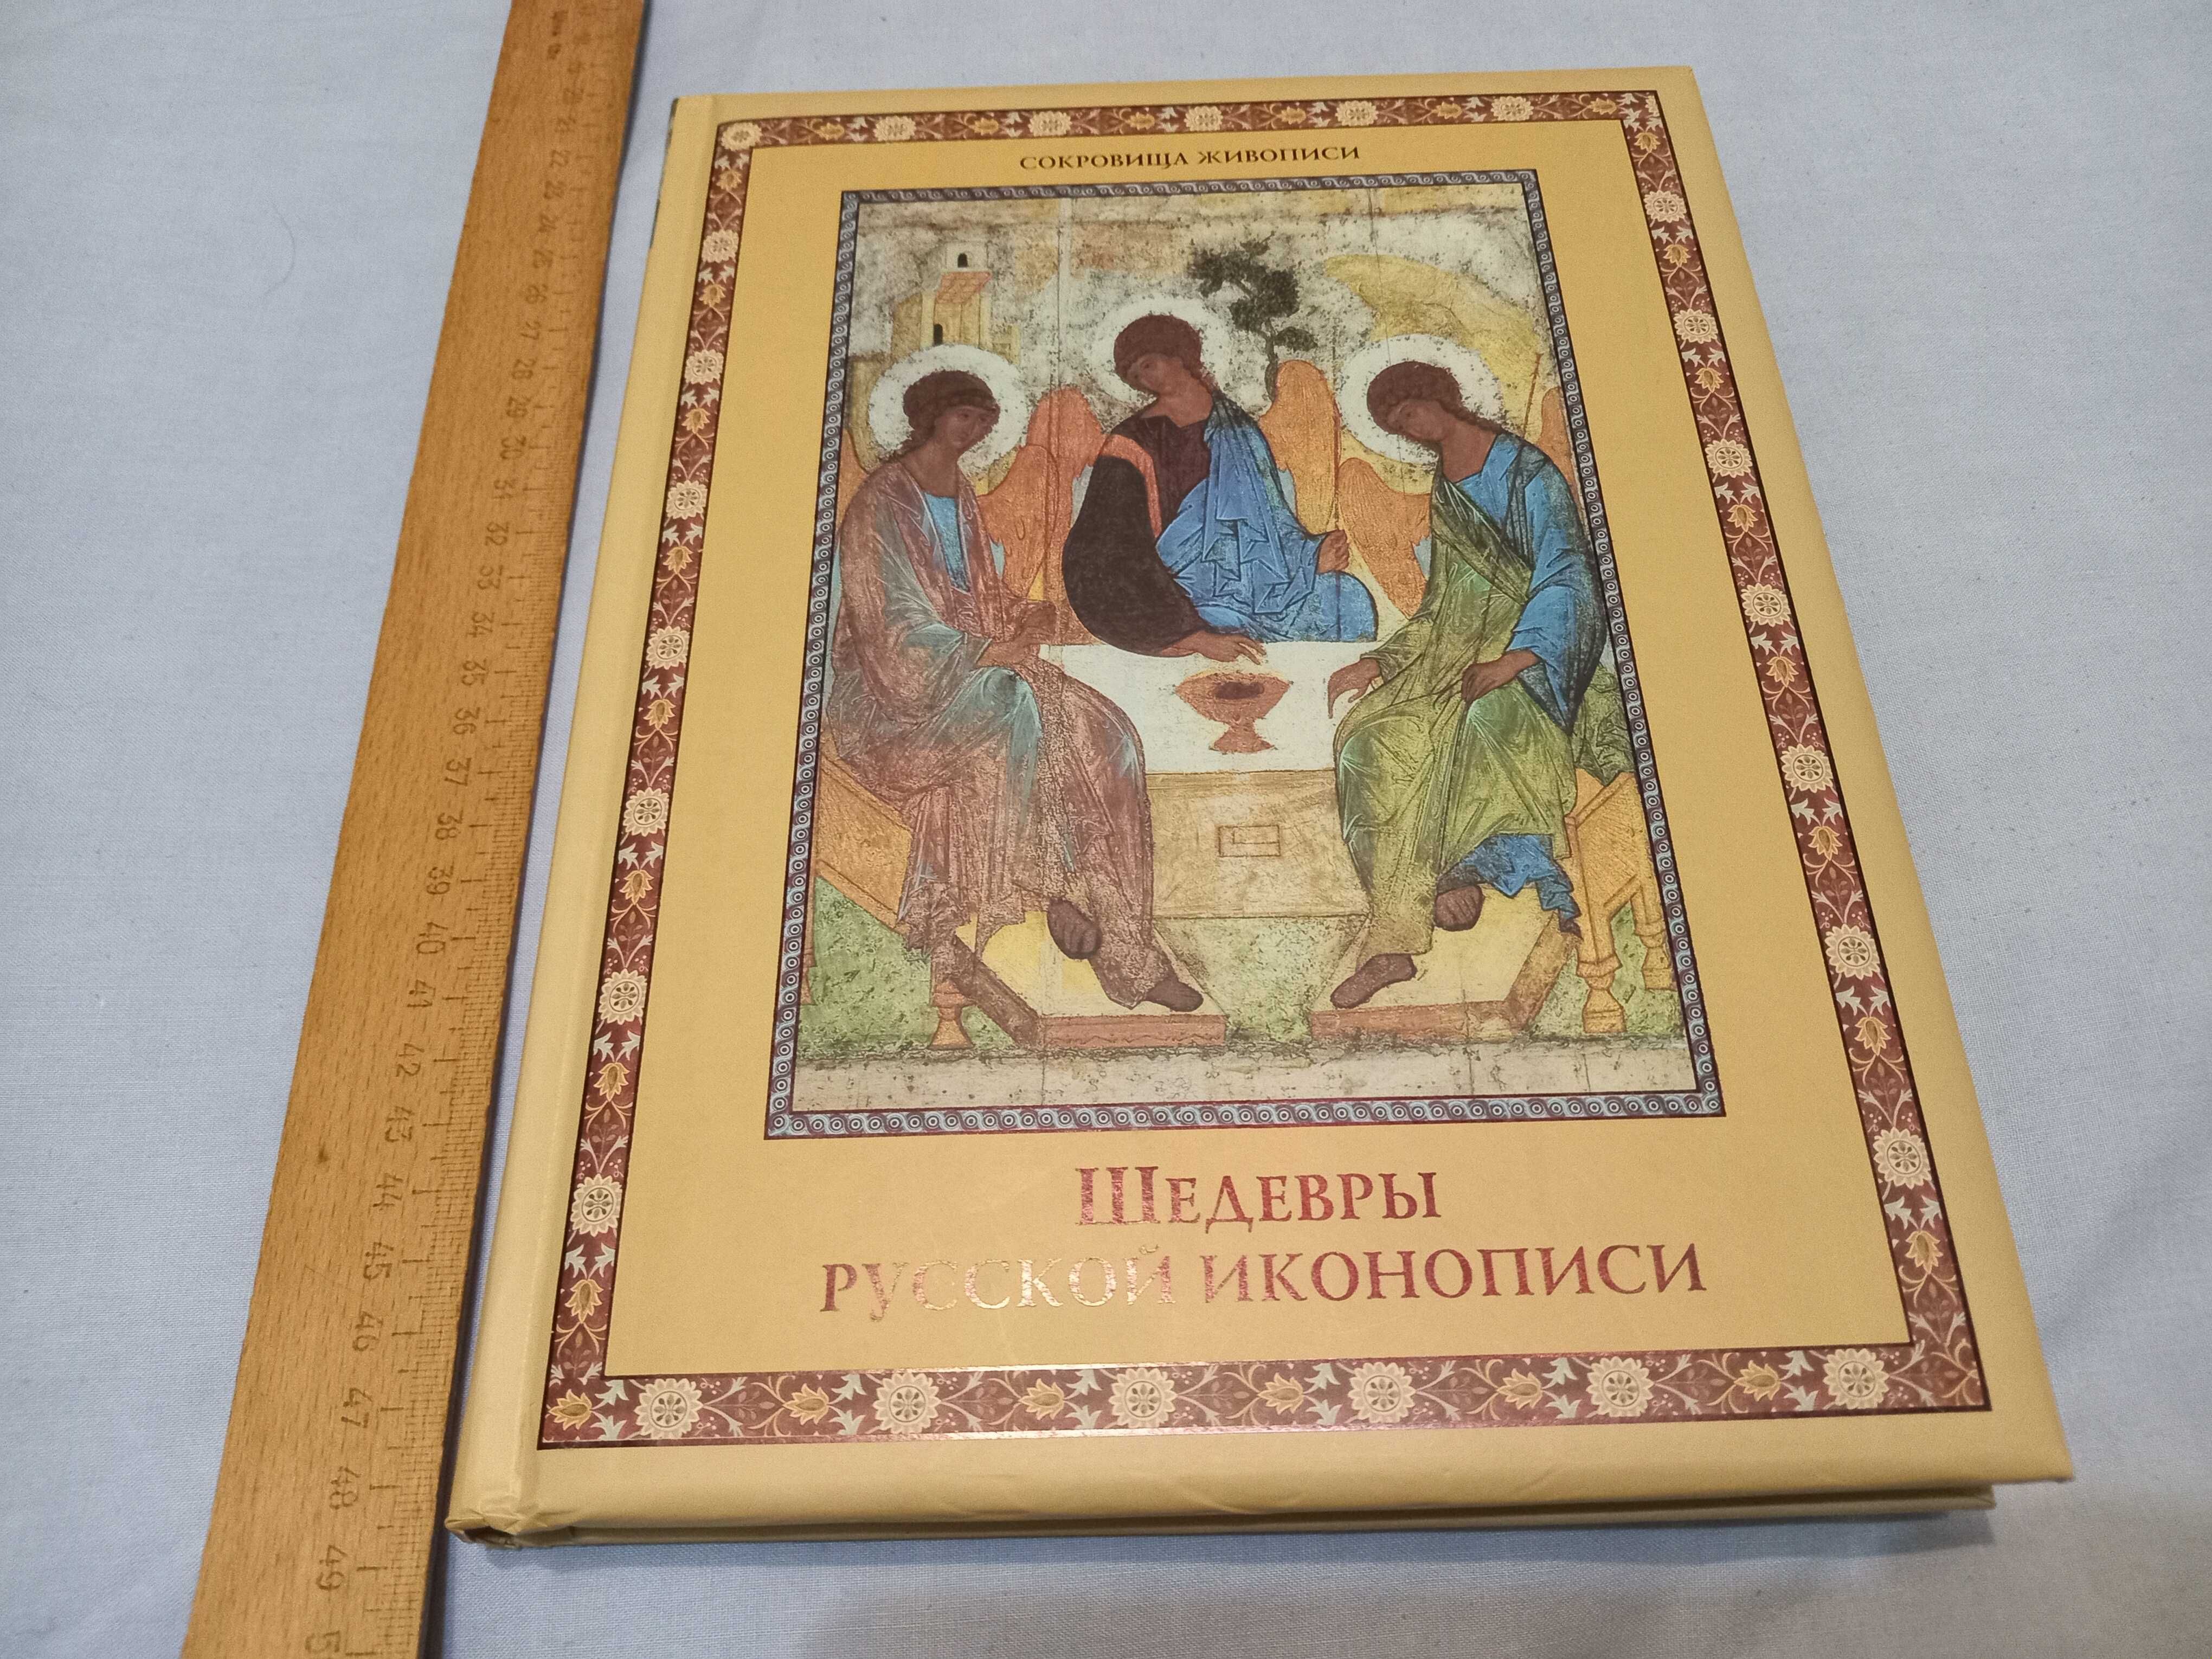 Иллюстрированная Книга шедевры русской иконописи